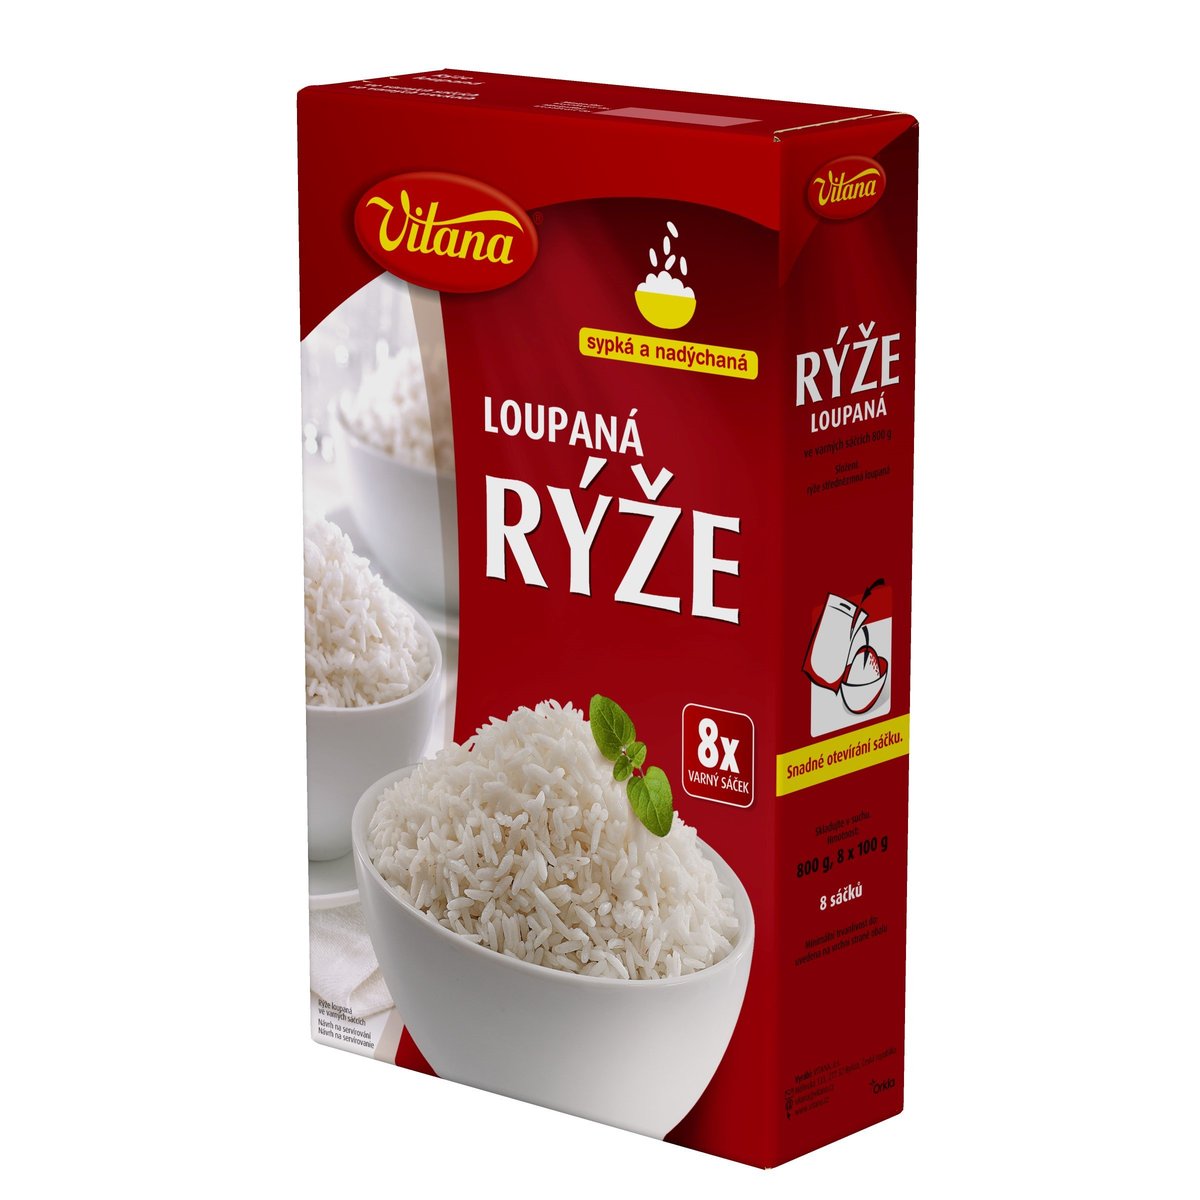 Vitana Rýže loupaná ve varných sáčcích